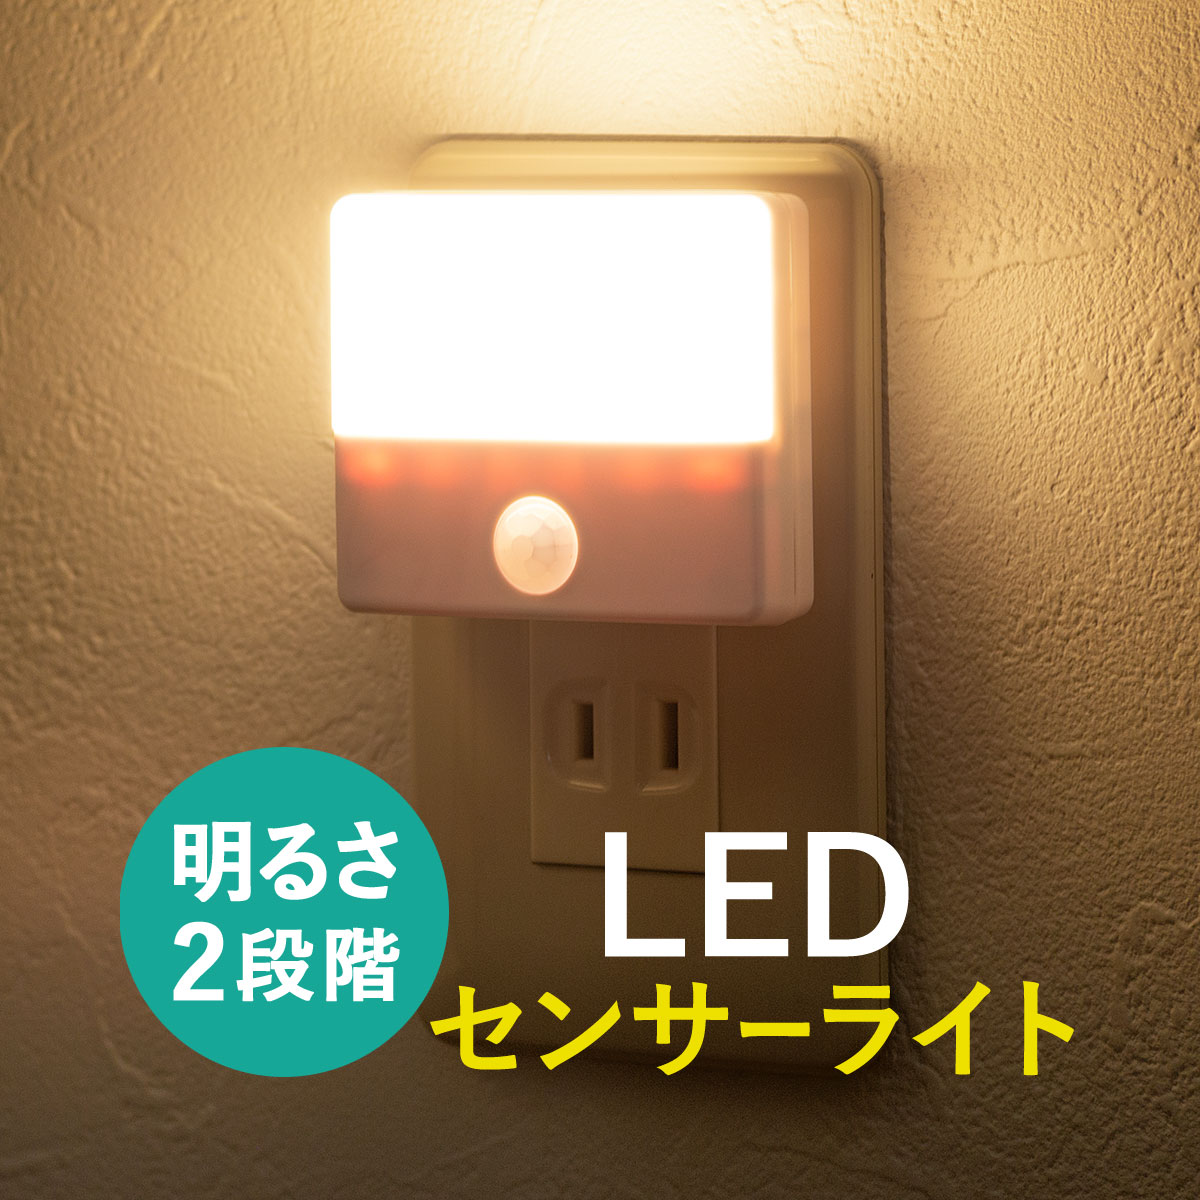 【楽天市場】LEDライト センサーライト AC電源 コンセント 室内 屋内用 薄型 小型 ナイトライト おしゃれ 廊下 玄関 寝室 人感